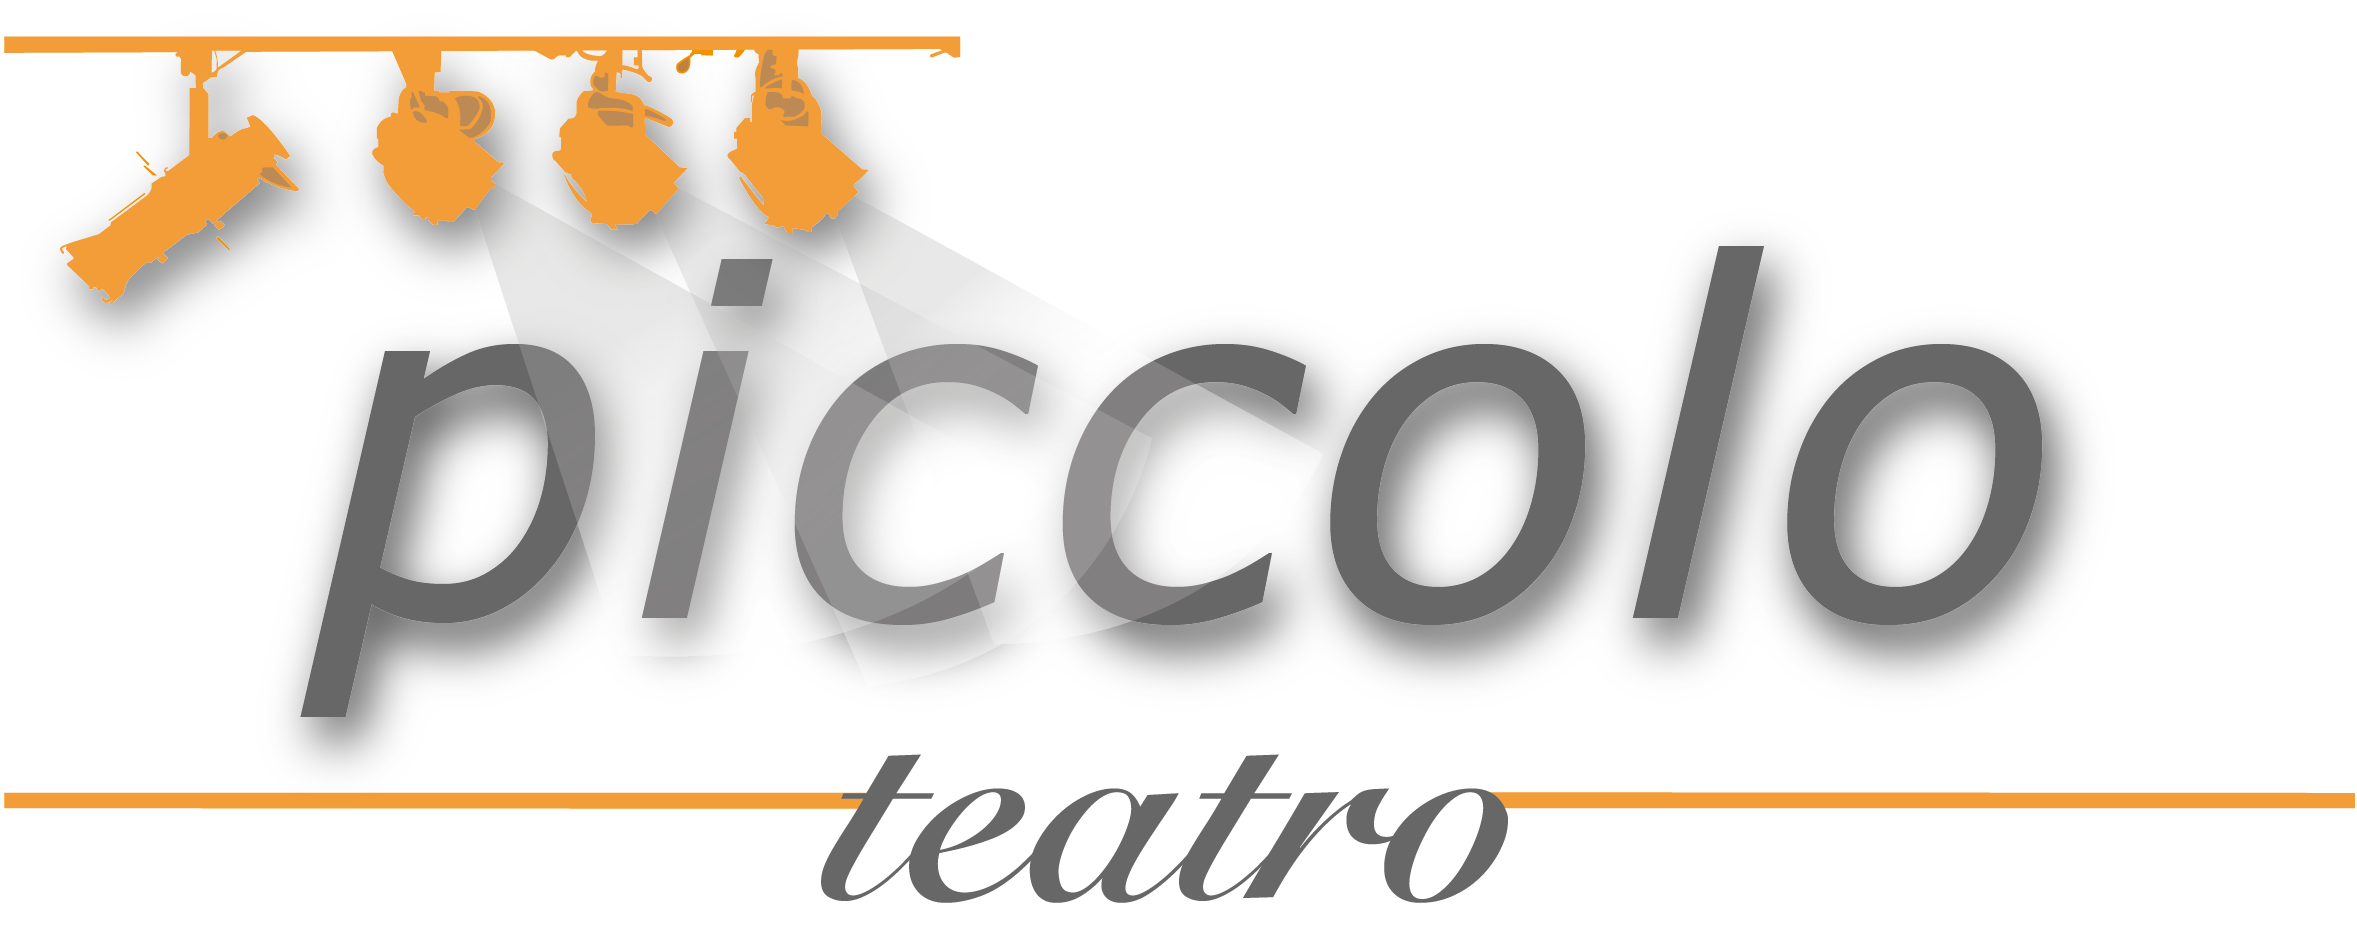 Лого Piccolo teatro